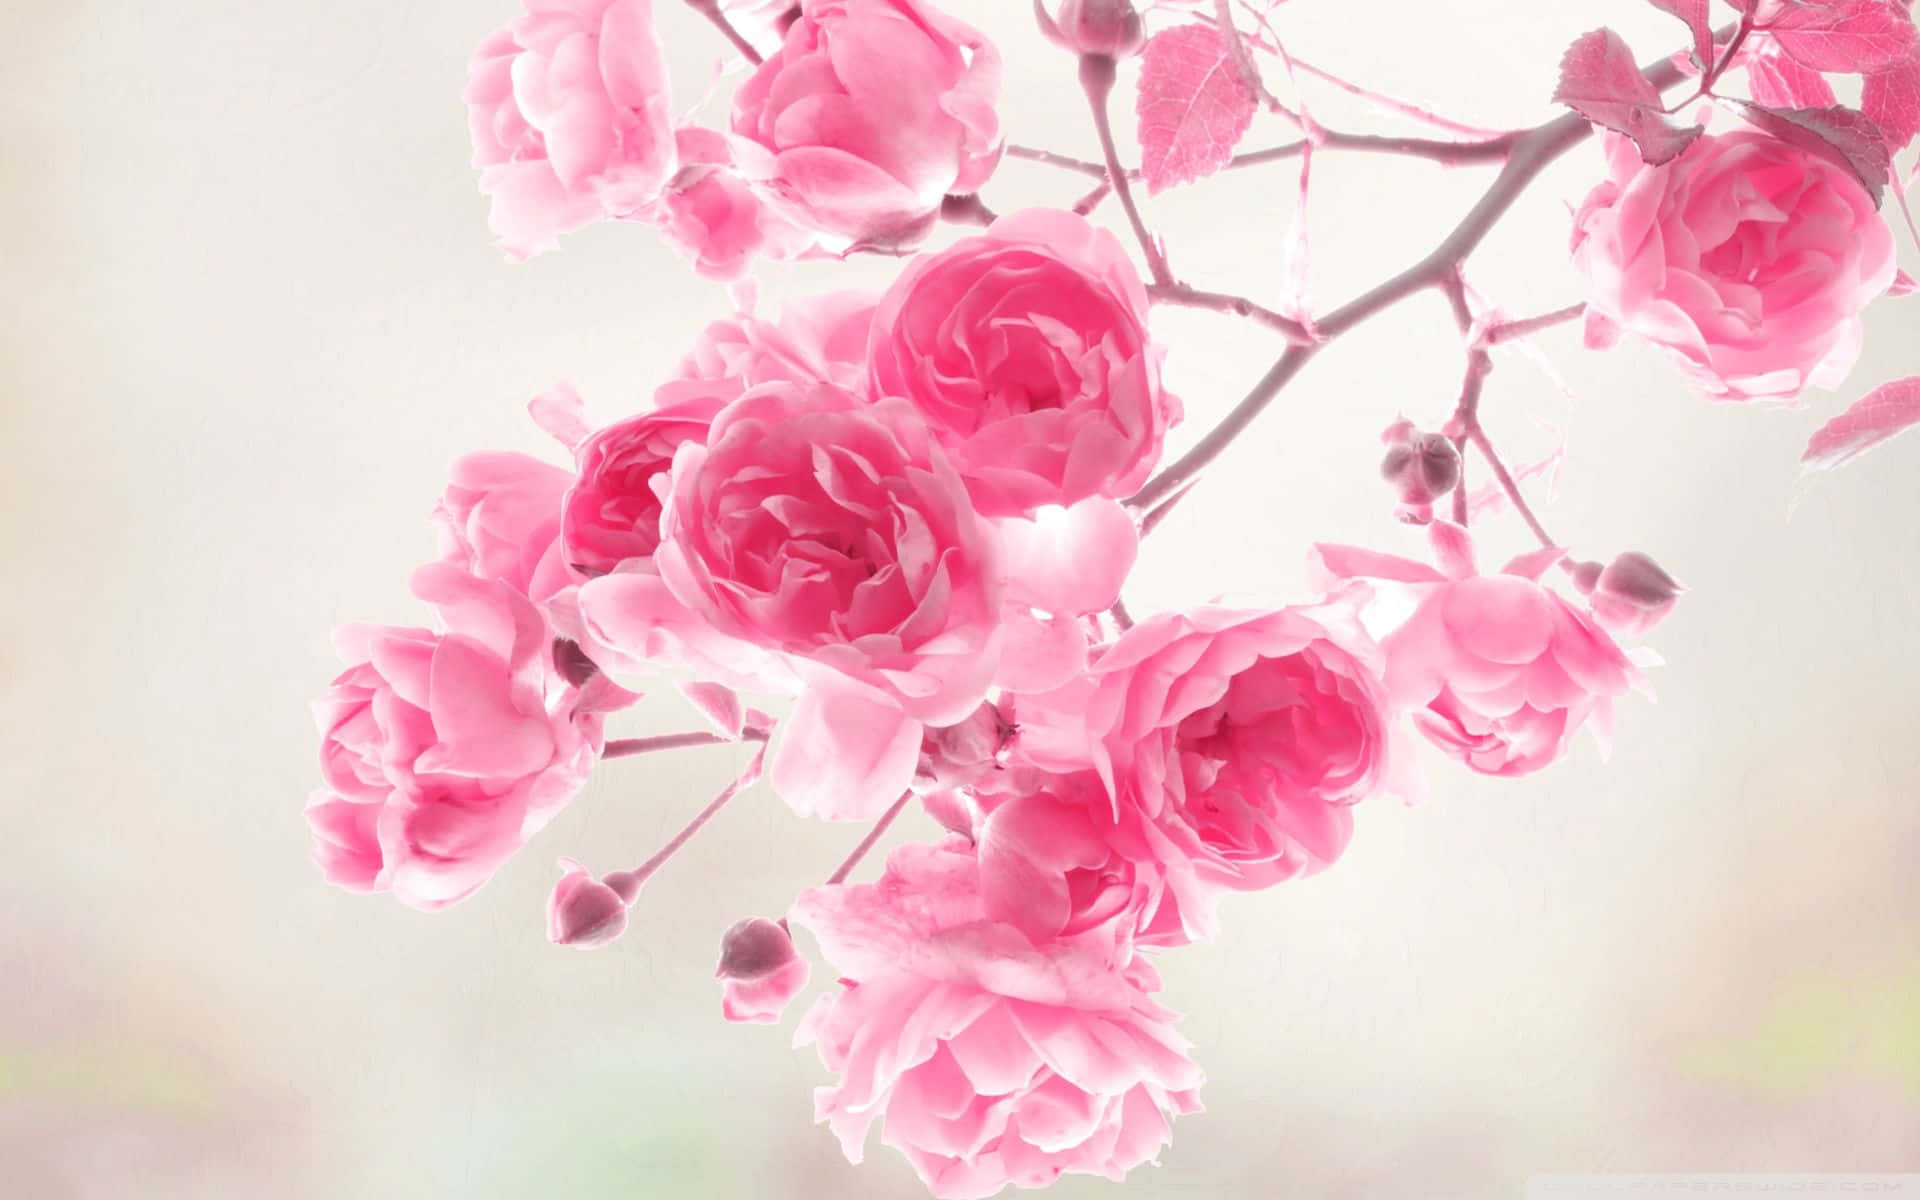 Blommandeträd Av Rosa Rosor Som Bakgrundsbild.